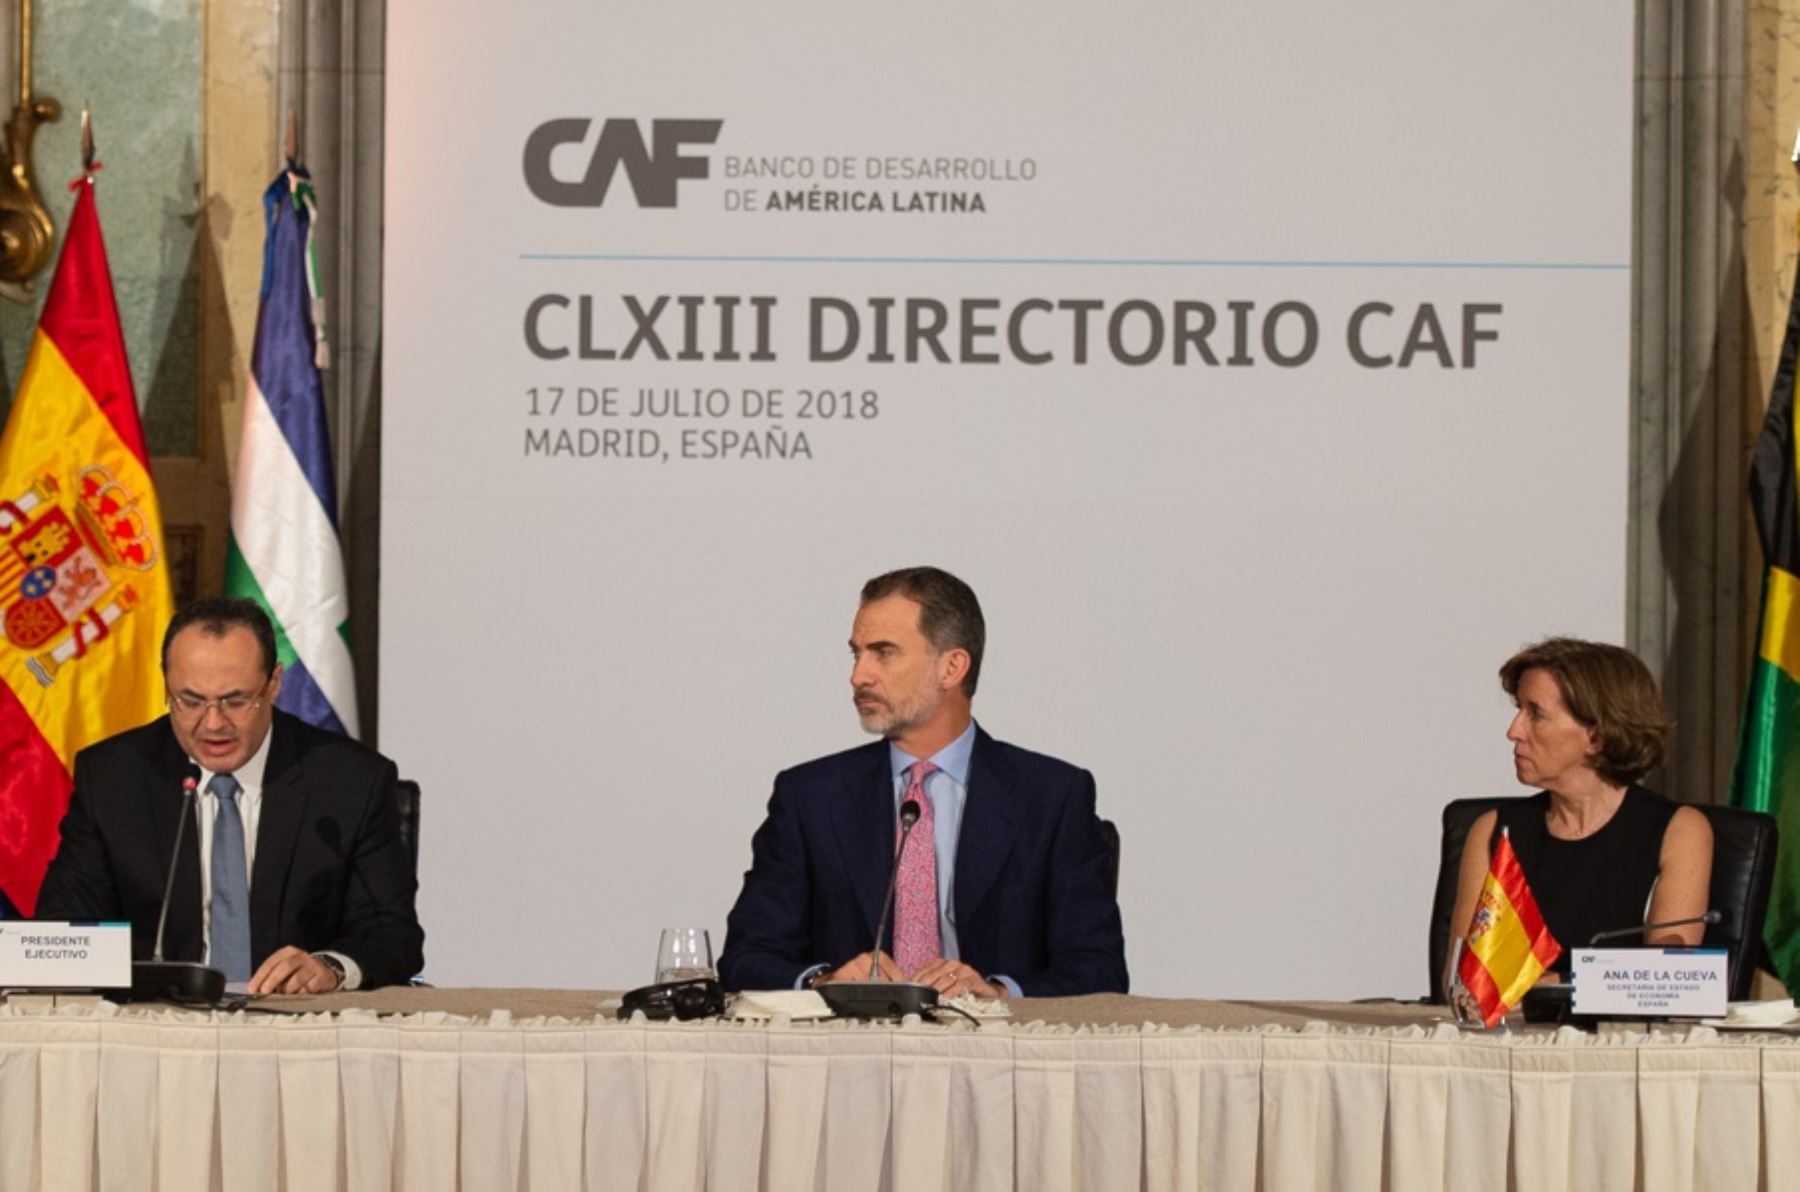 Rey de España Felipe VI inaugura sesión de directorio CAF en Madrid. Foto: Cortesía.